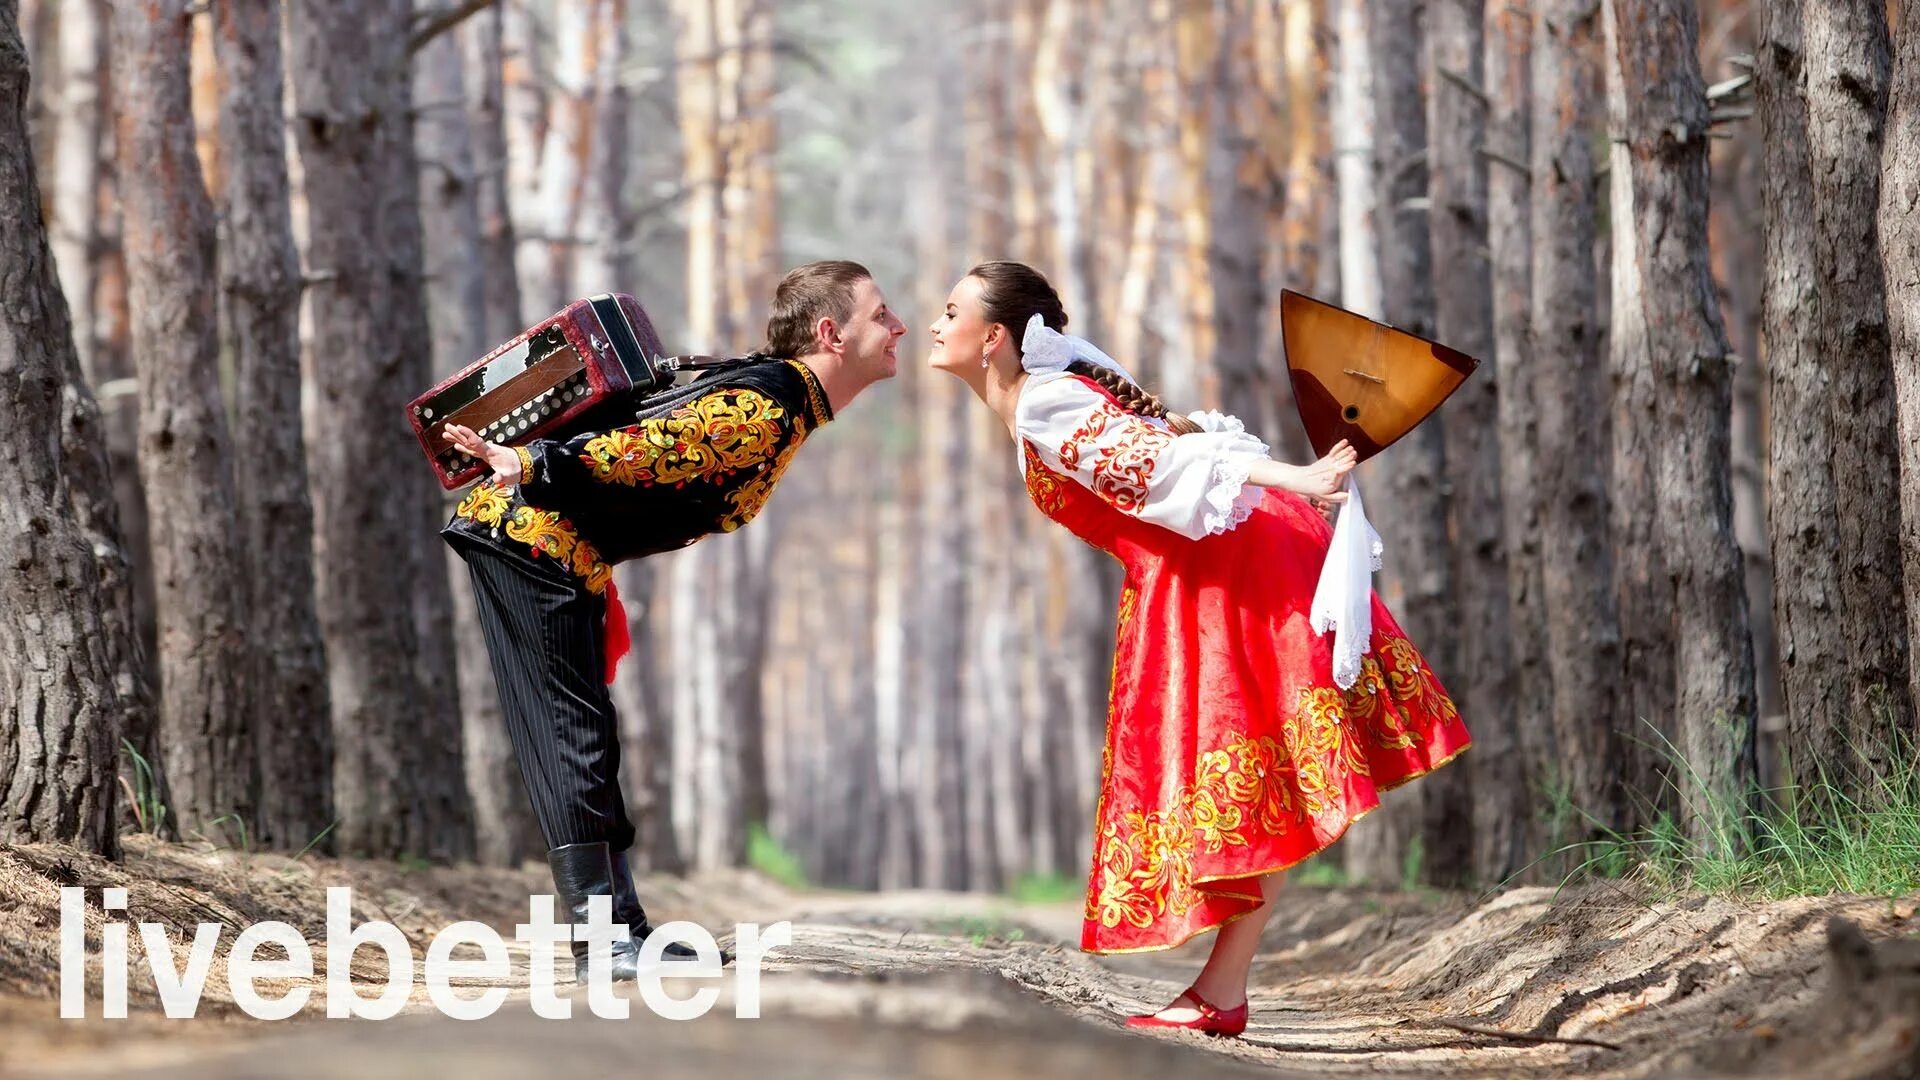 Народный танец на природе. Русский танец на природе. Народные танцы России на природе. Украинские танцы на природе. Парный народный танец